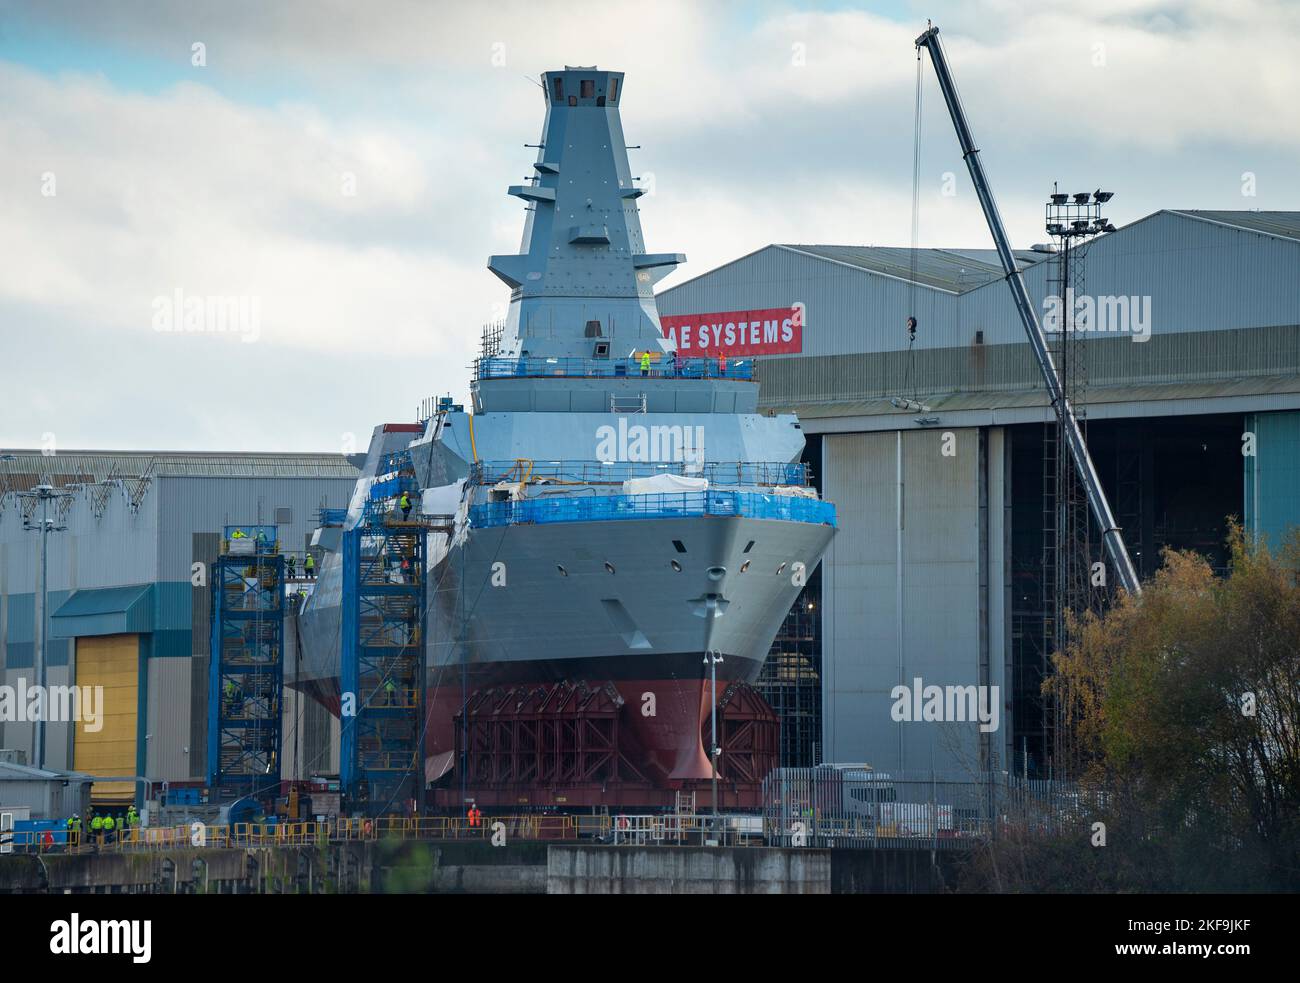 Blick auf das unter U-Boot-Schiff HMS Glasgow Type 26, das in der BAE Systems Werft in Govan am Fluss Clyde in Glasgow, Schottland, Großbritannien, gebaut wird Stockfoto